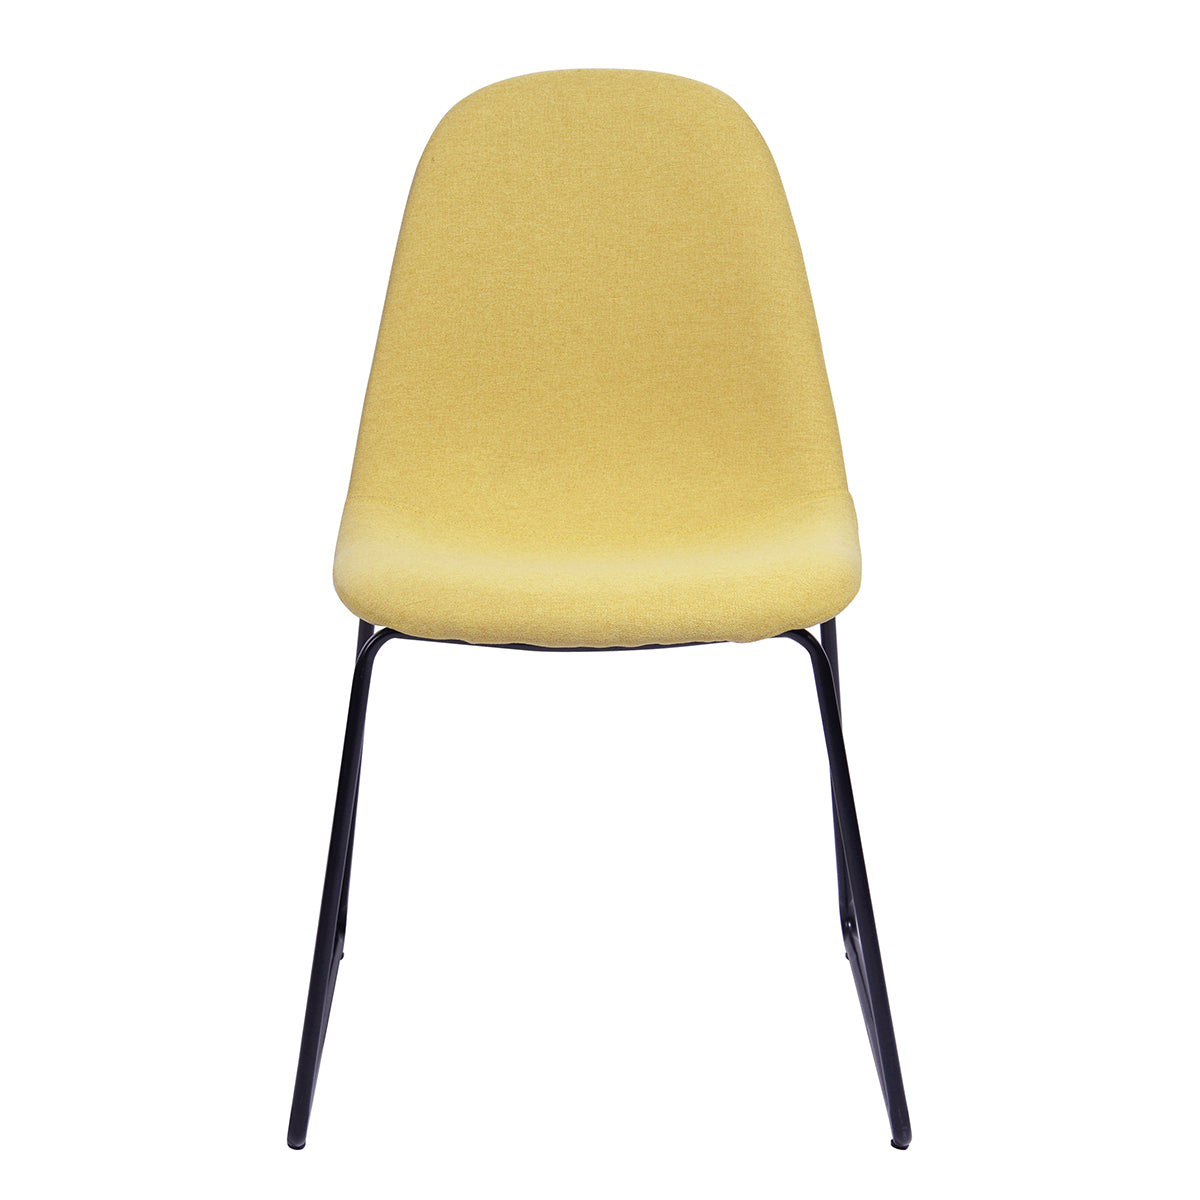 Suva Yellow Dining Chair